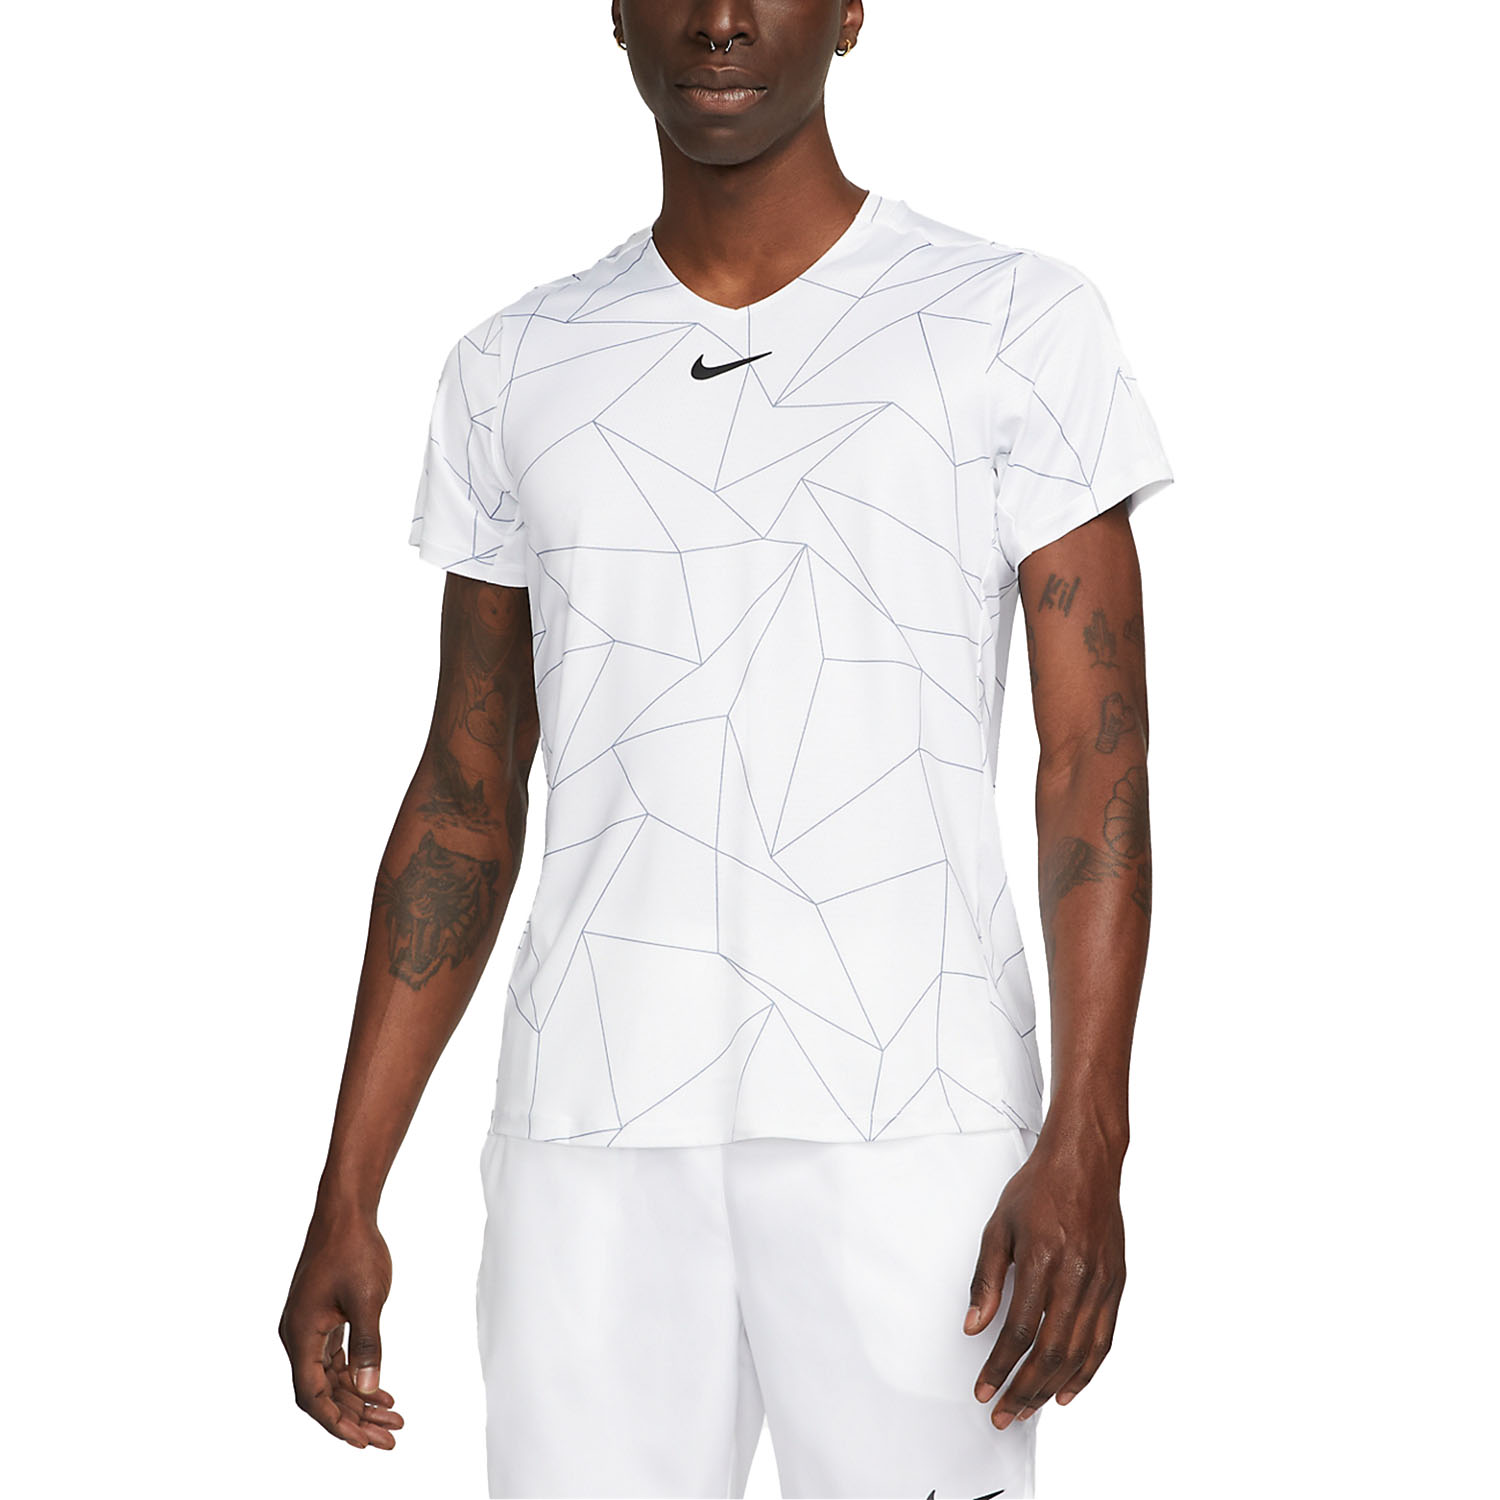 Nike Dri-FIT Advantage Geometric T-Shirt - White/Black